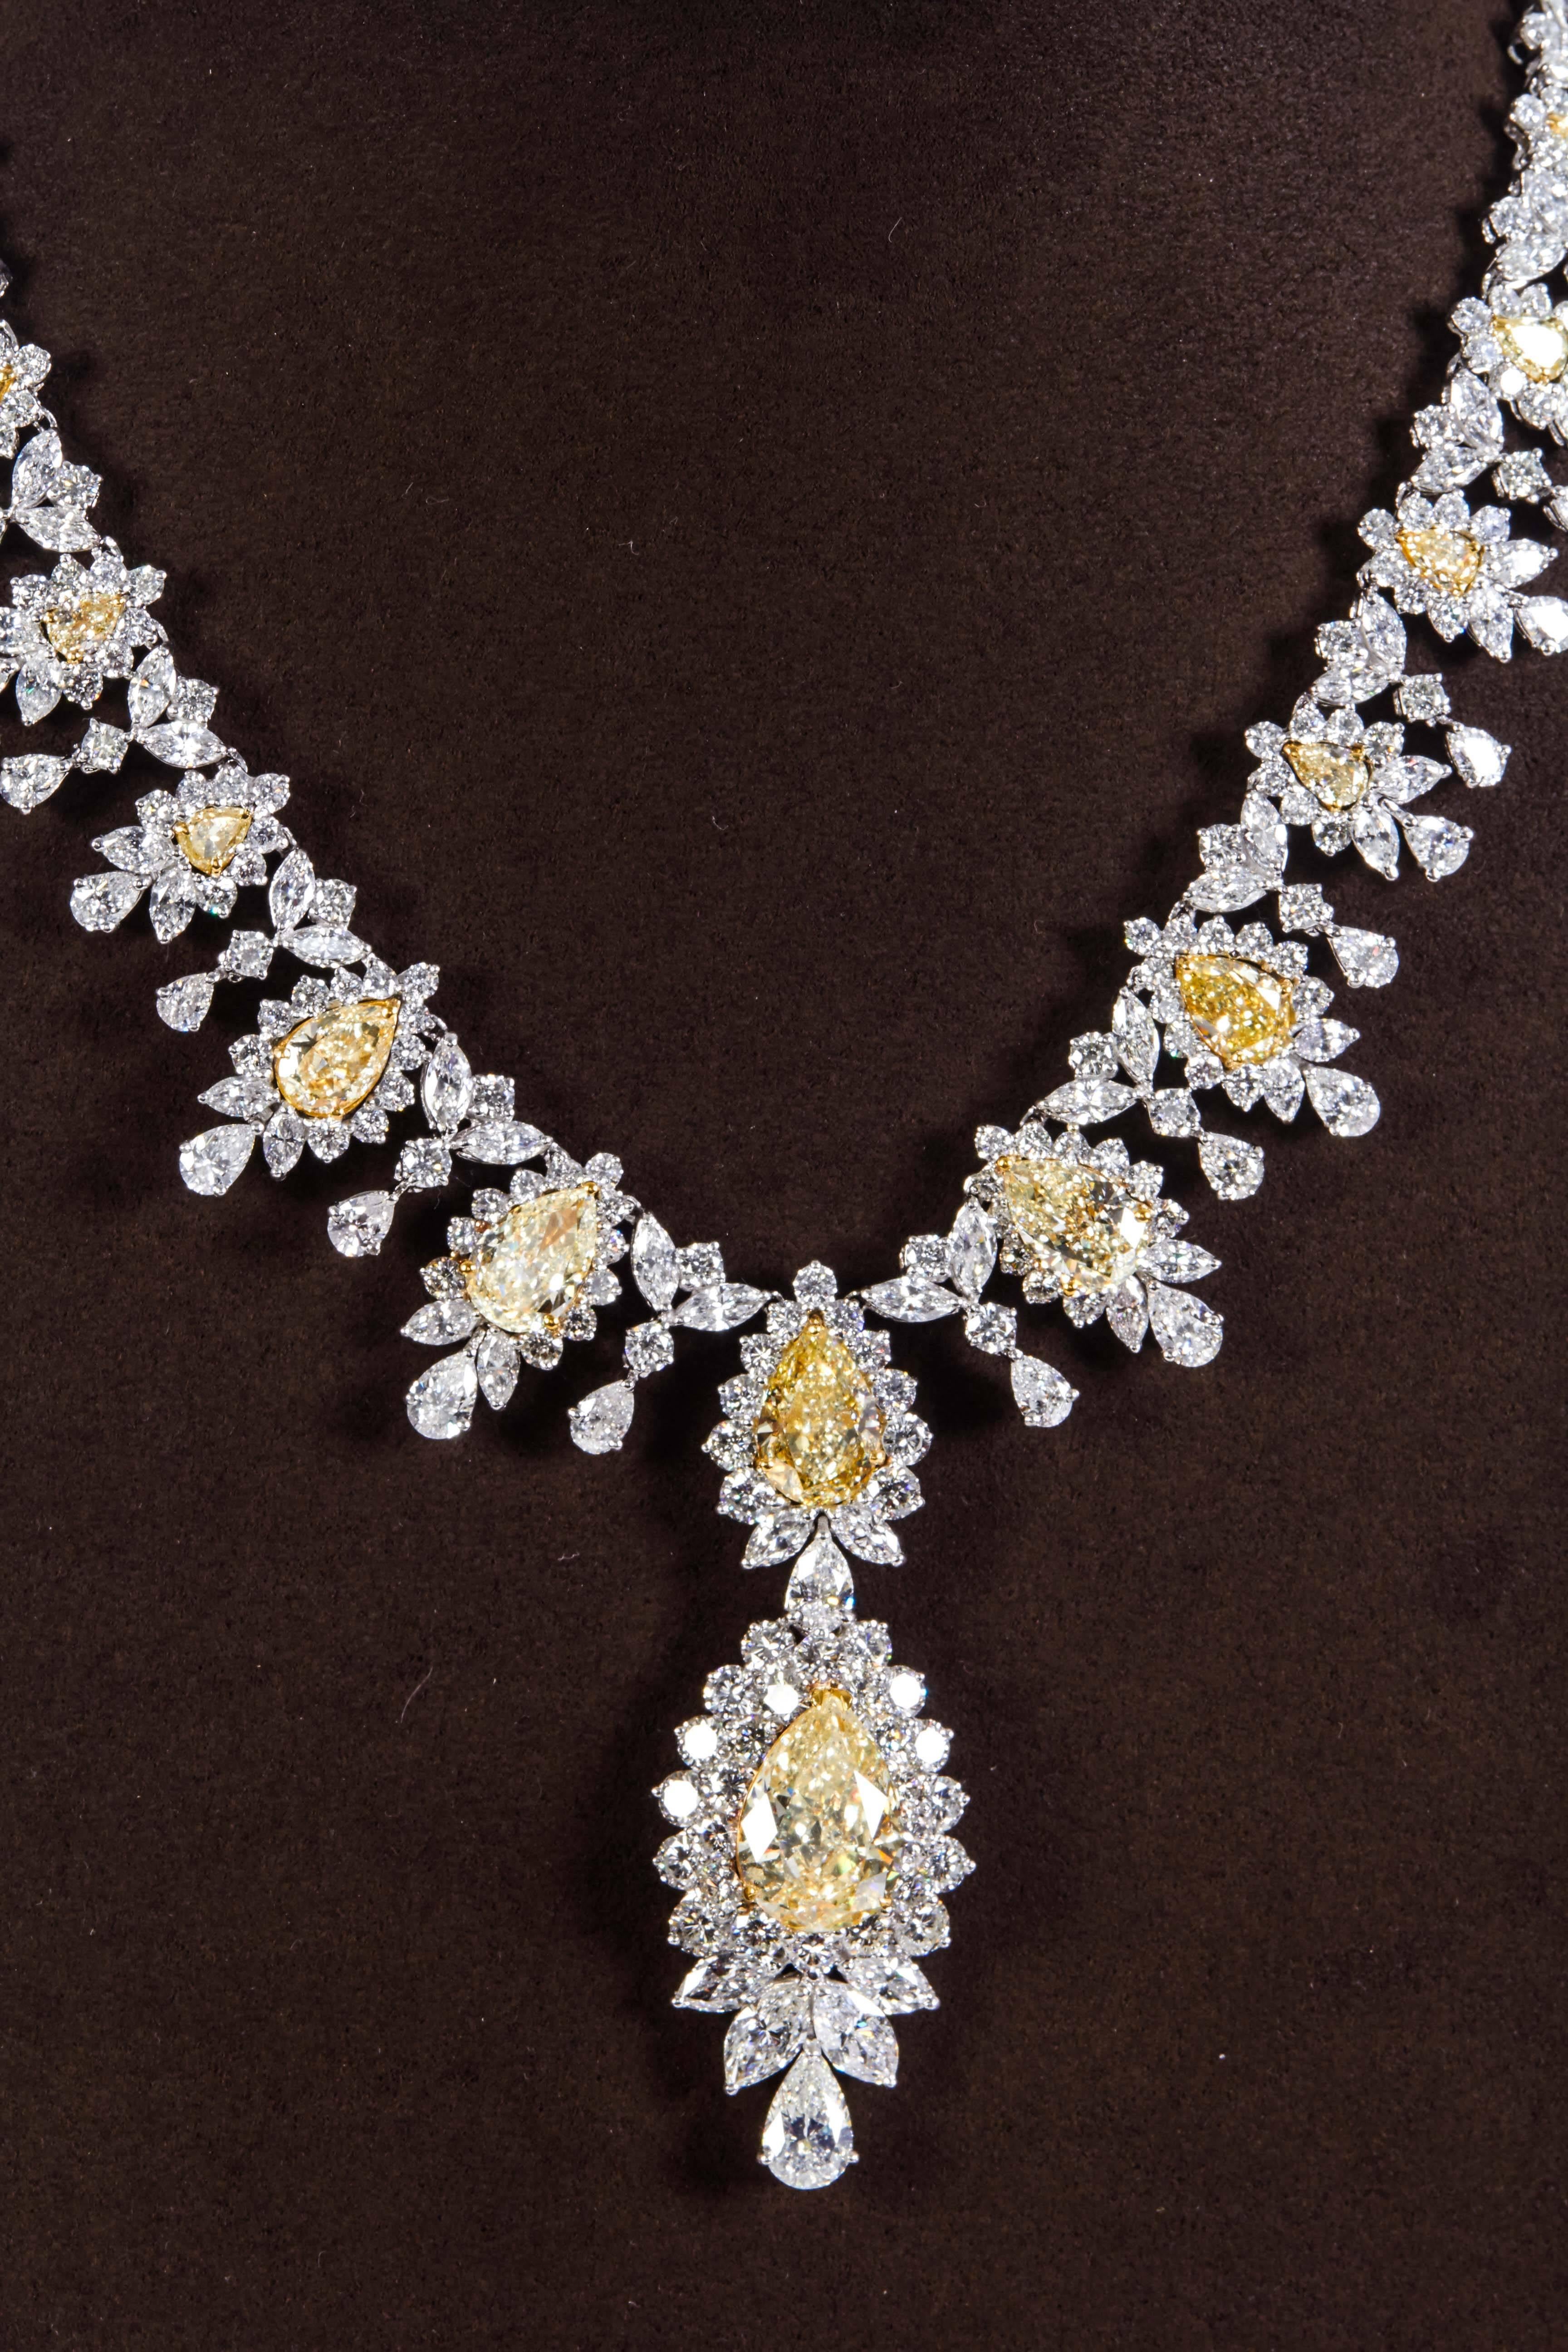 

Un beau et important collier en diamant jaune avec une goutte de diamant jaune.

31.86 carats de diamants jaunes et 68,35 carats de diamants blancs sertis en or jaune 18k et en platine. 

Le collier comprend une goutte en forme de poire de